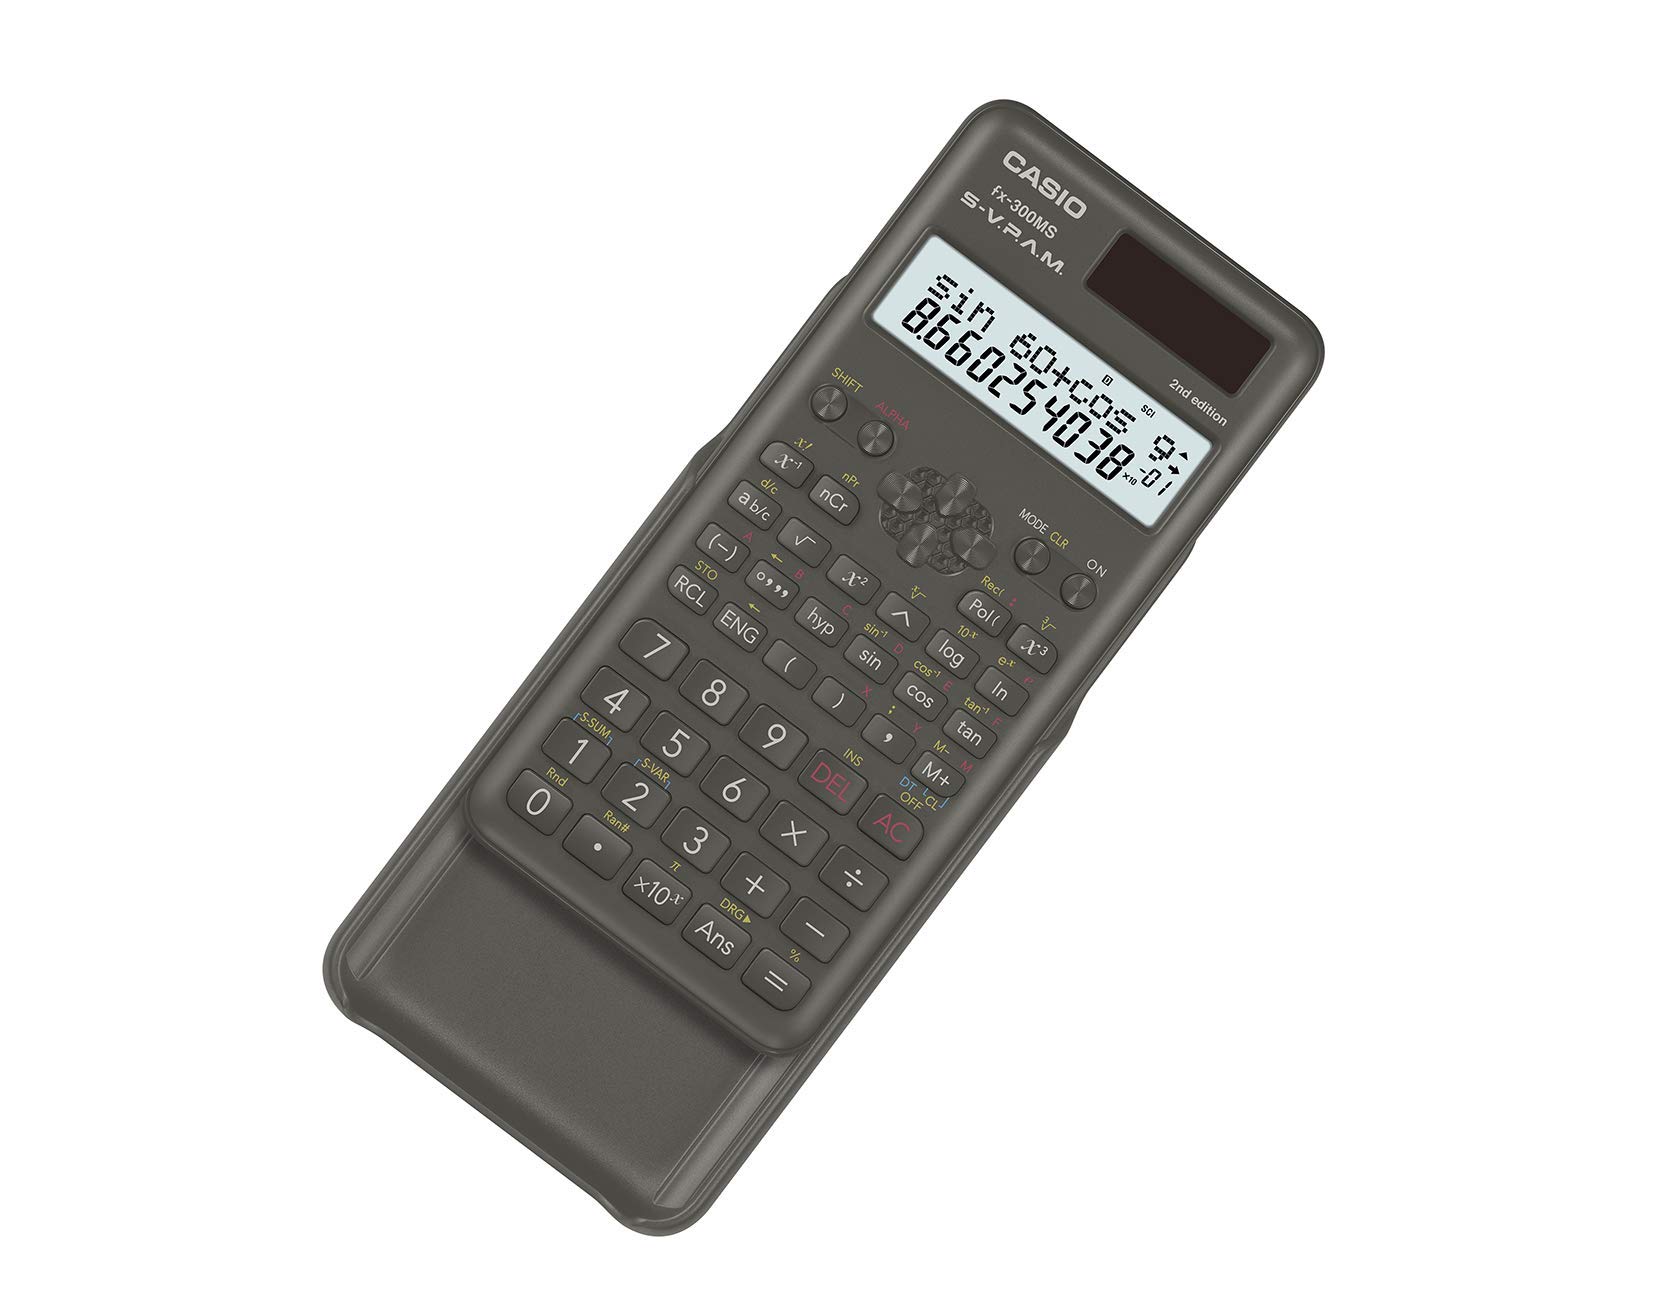 Casio FX300MSPLUS2 Scientific 2nd Edition Calculator, with New Sleek Design., Black, 0.4